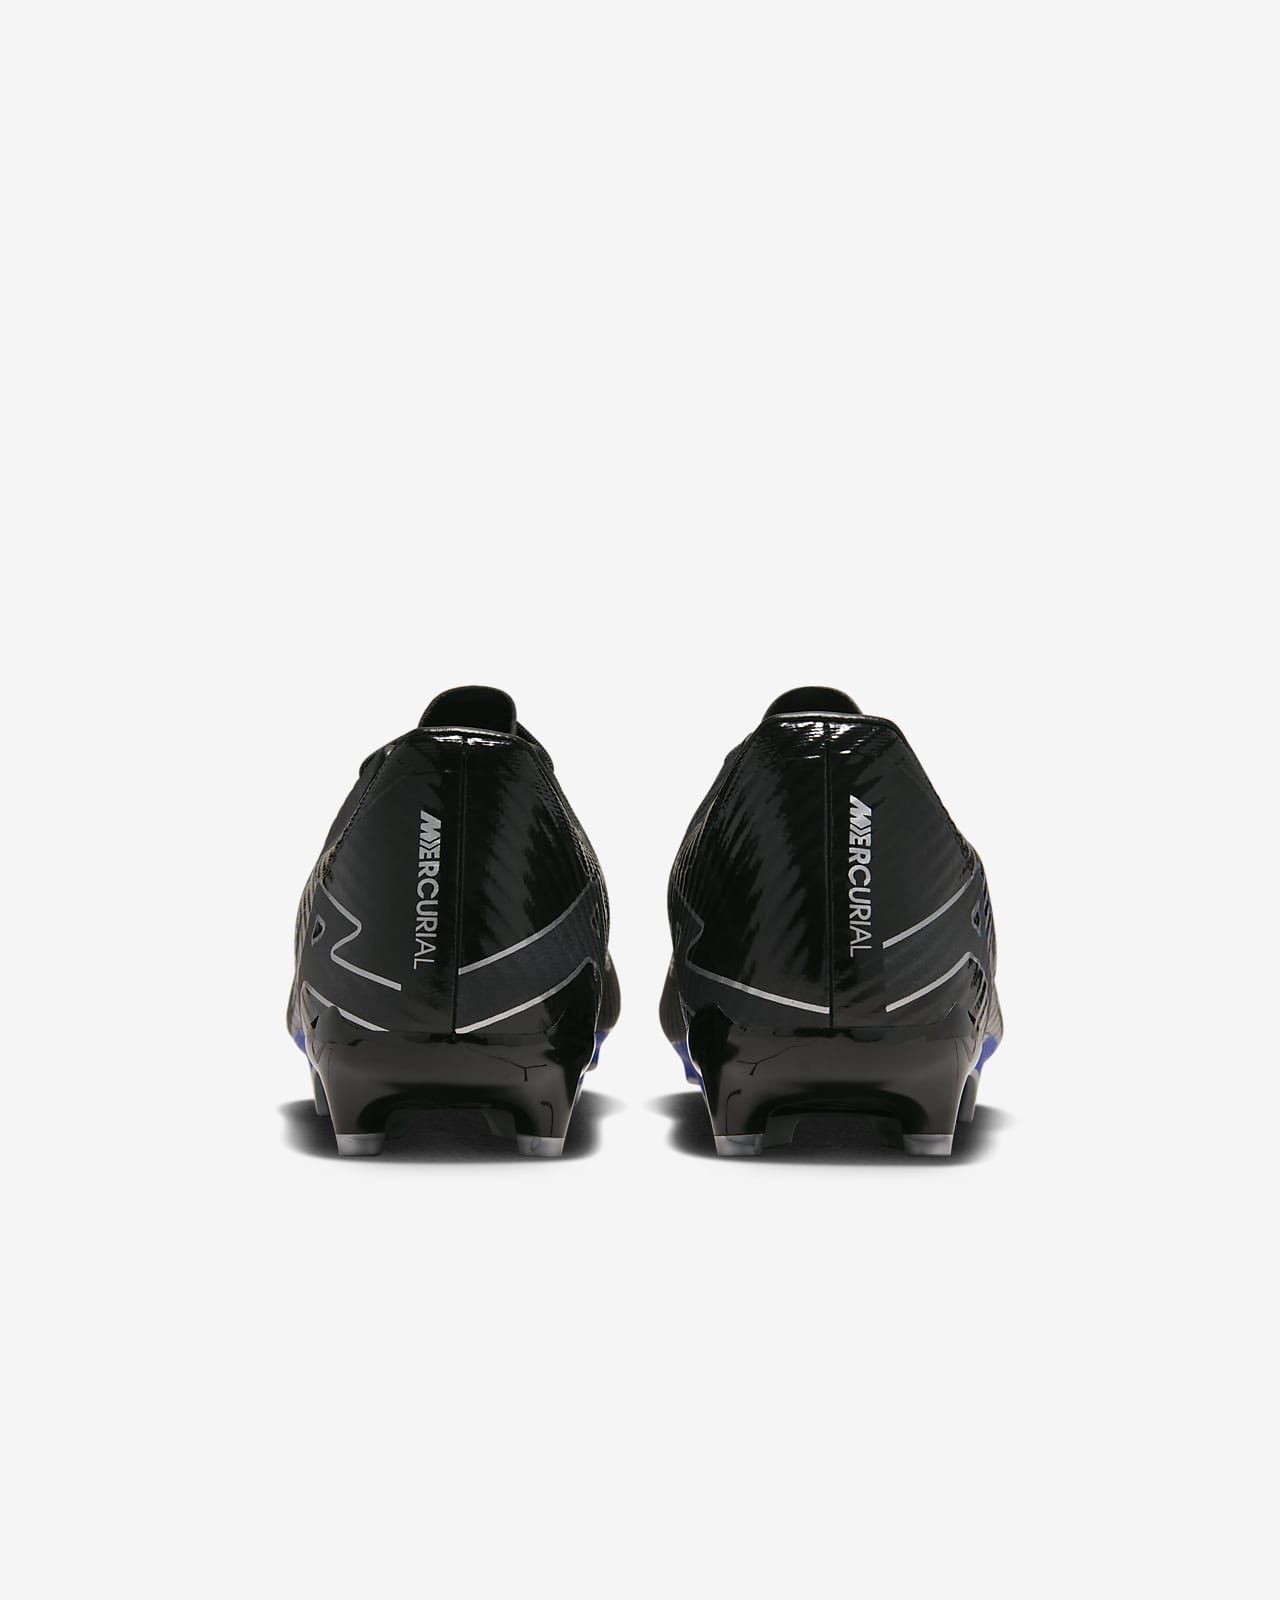 Chaussure de foot basse à crampons multi-surfaces Nike Mercurial Vapor 15  Academy